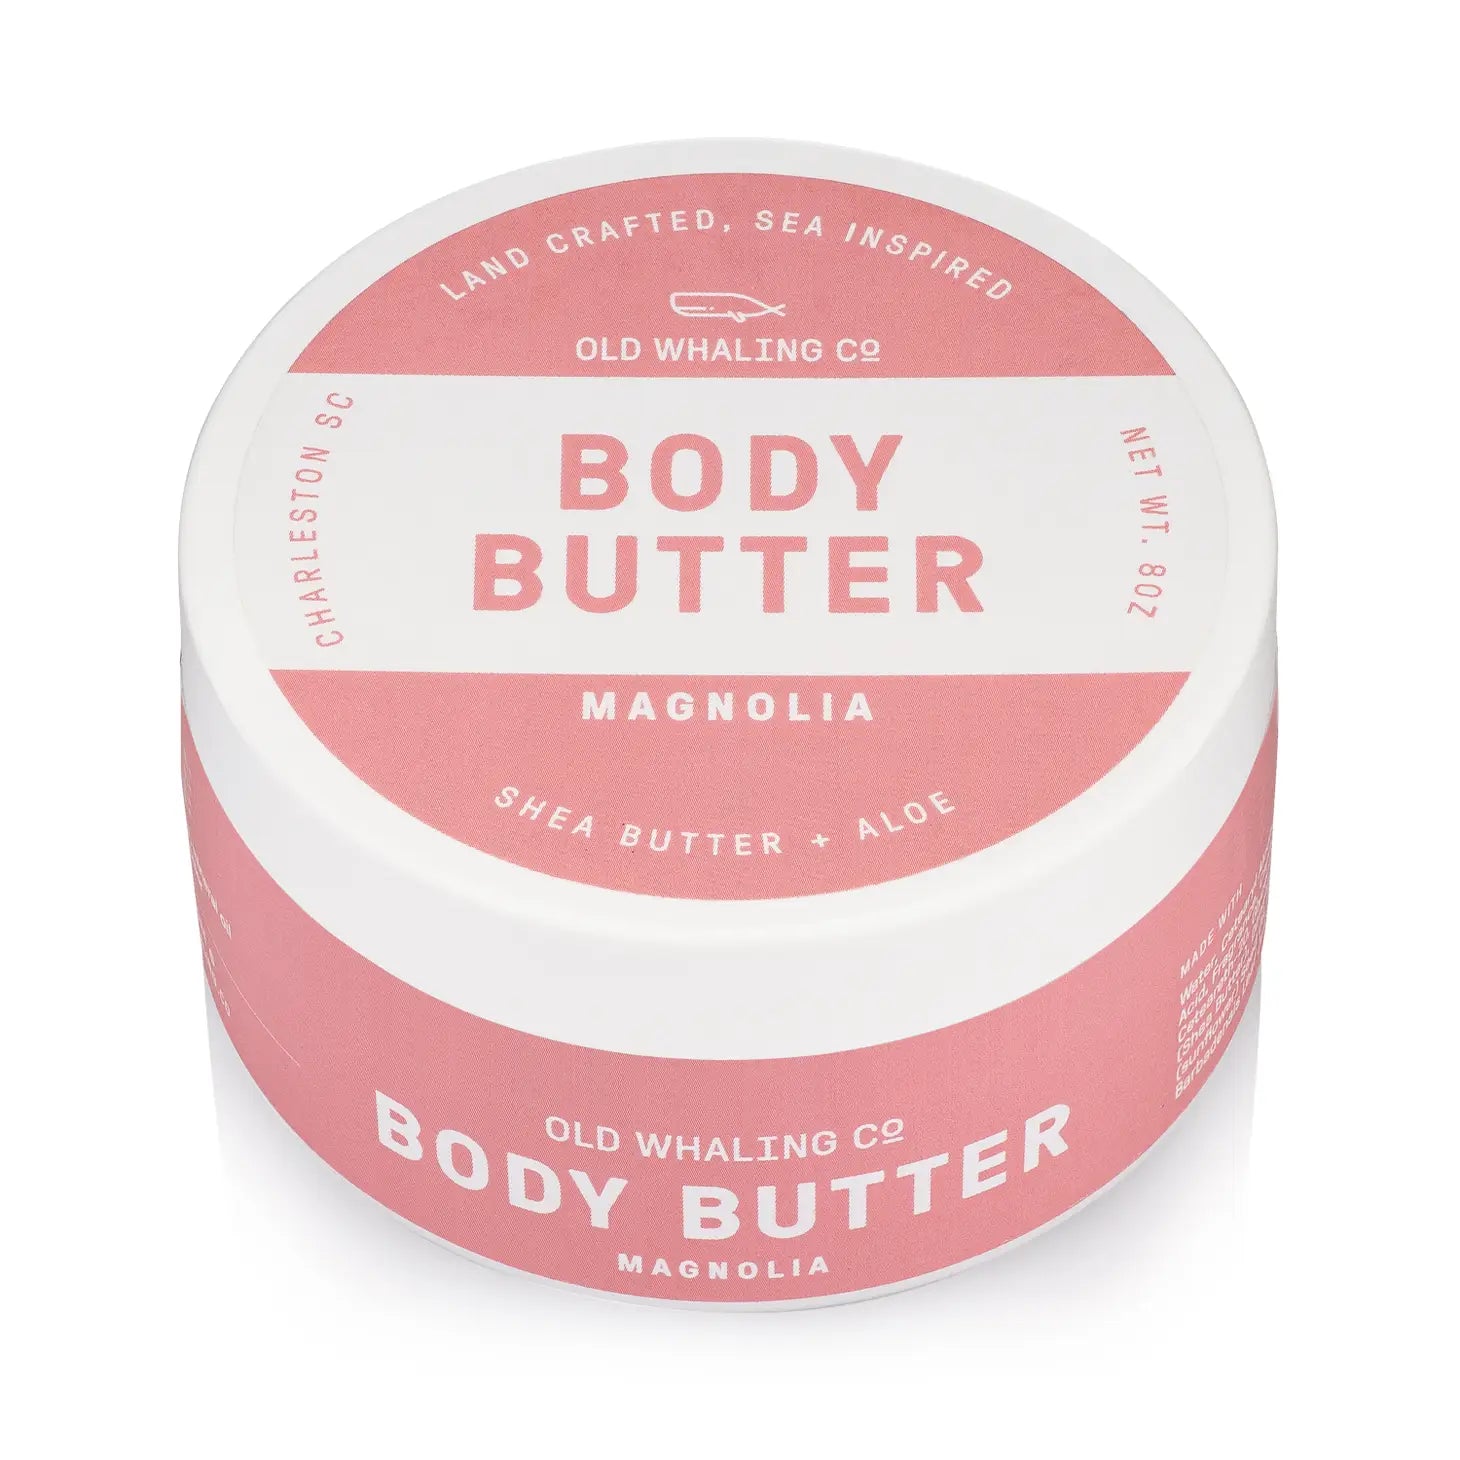 Magnolia Body Butter 8oz